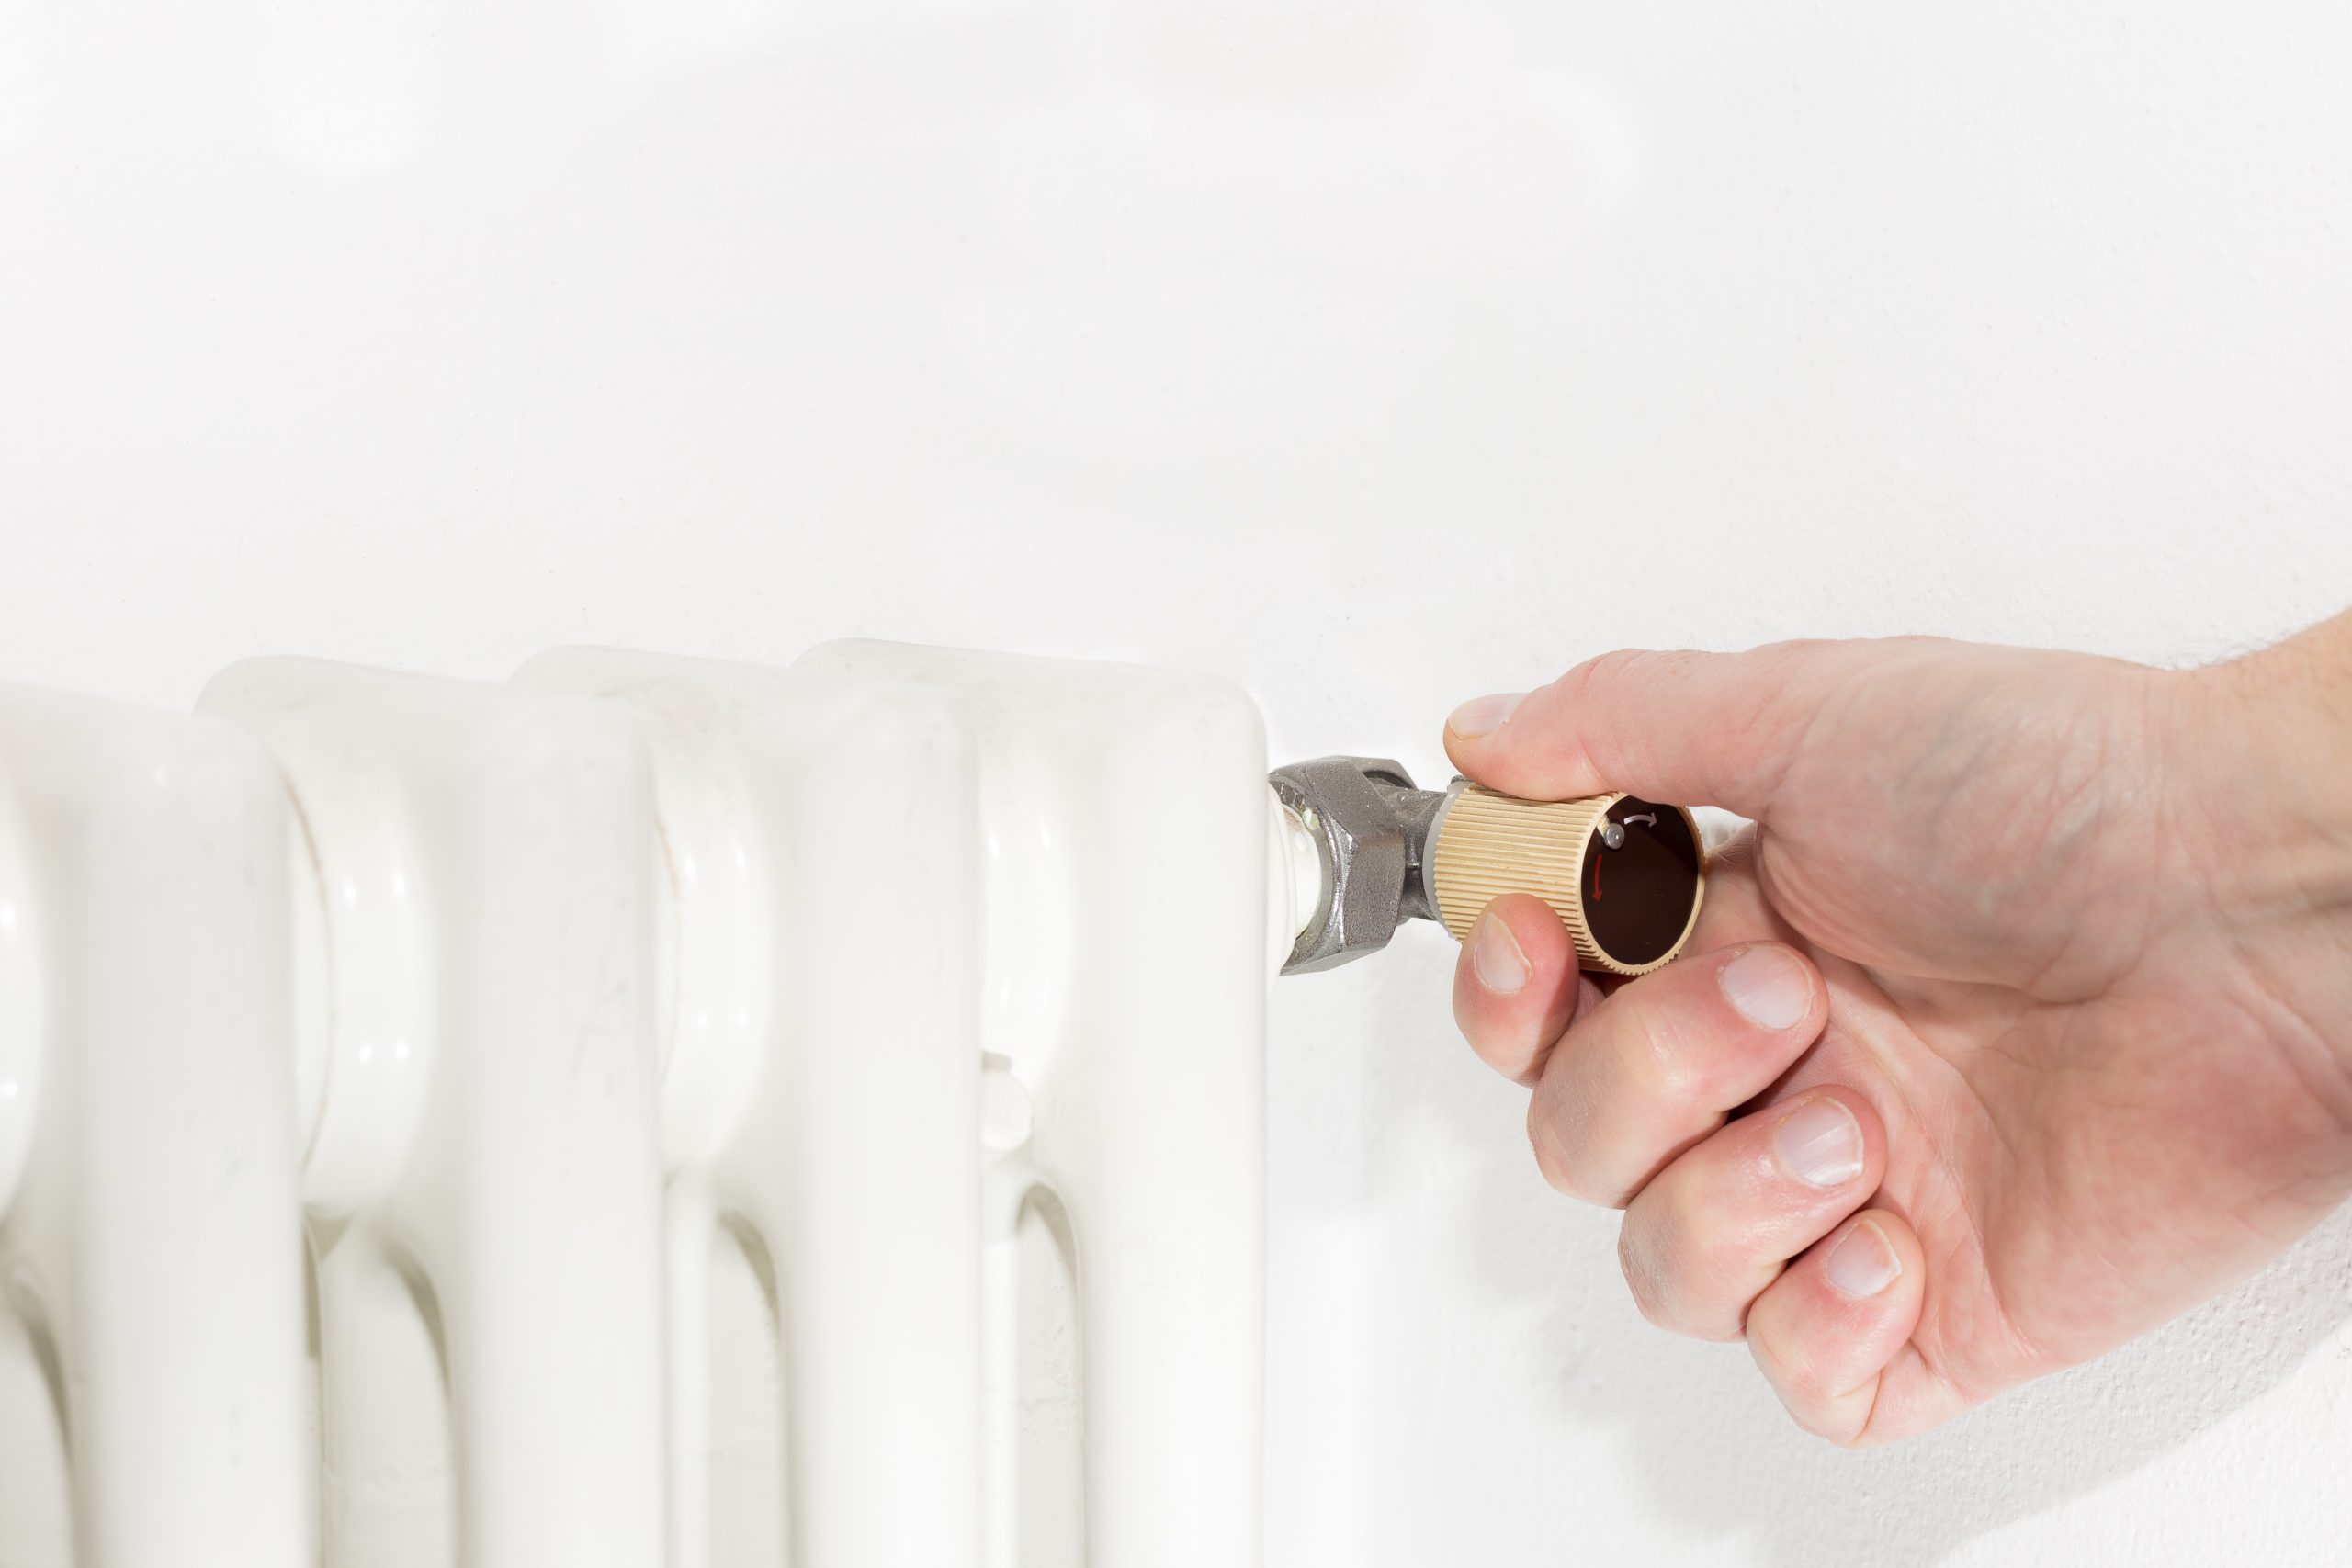 Come pulire i termosifoni: il metodo semplice e corretto step by step!